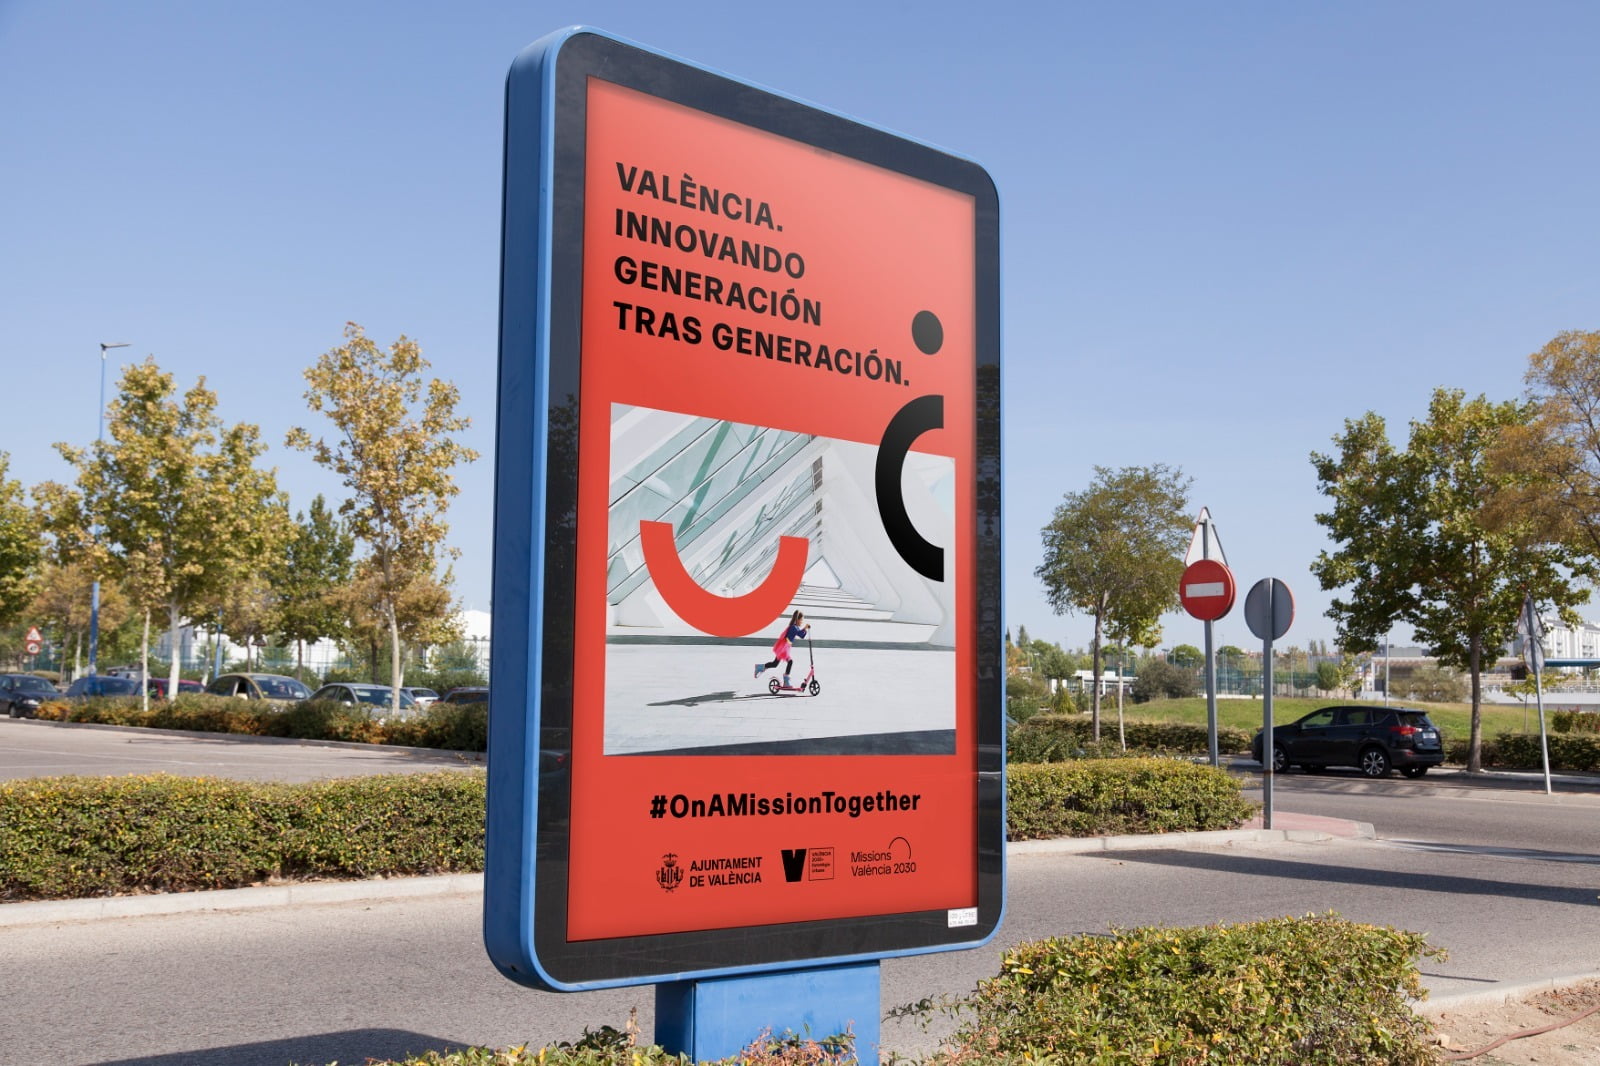 Mupi a un carrer de València amb anunci de Missions València 2030